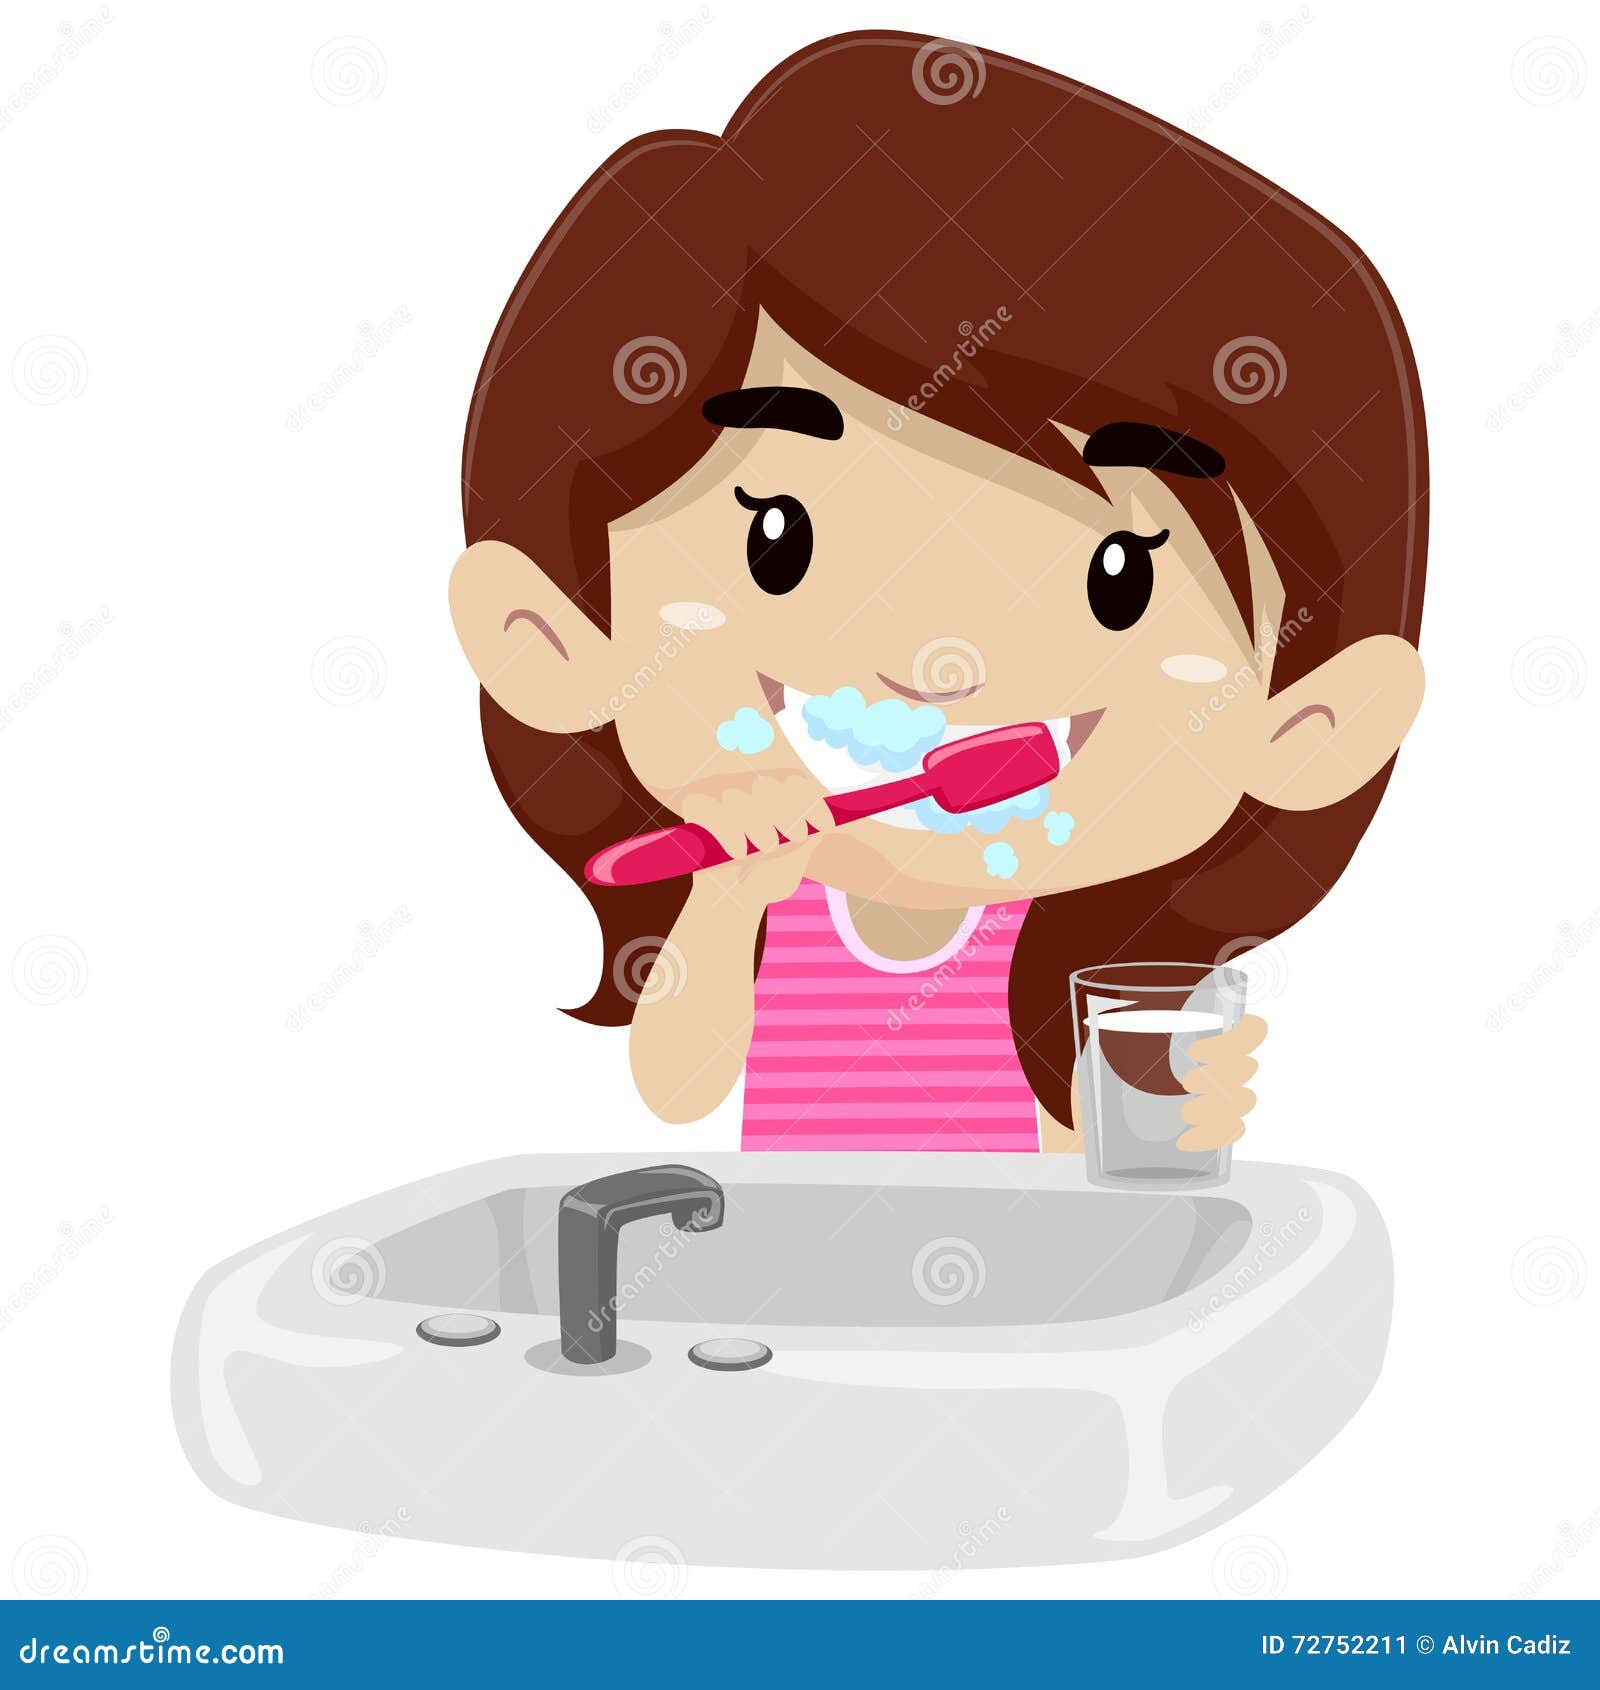 I wash and clean my teeth. Девочка чистит зубы. Мультяшная девочка чистит зубы. Человек умывается чистит зубы. Девочка умывается.